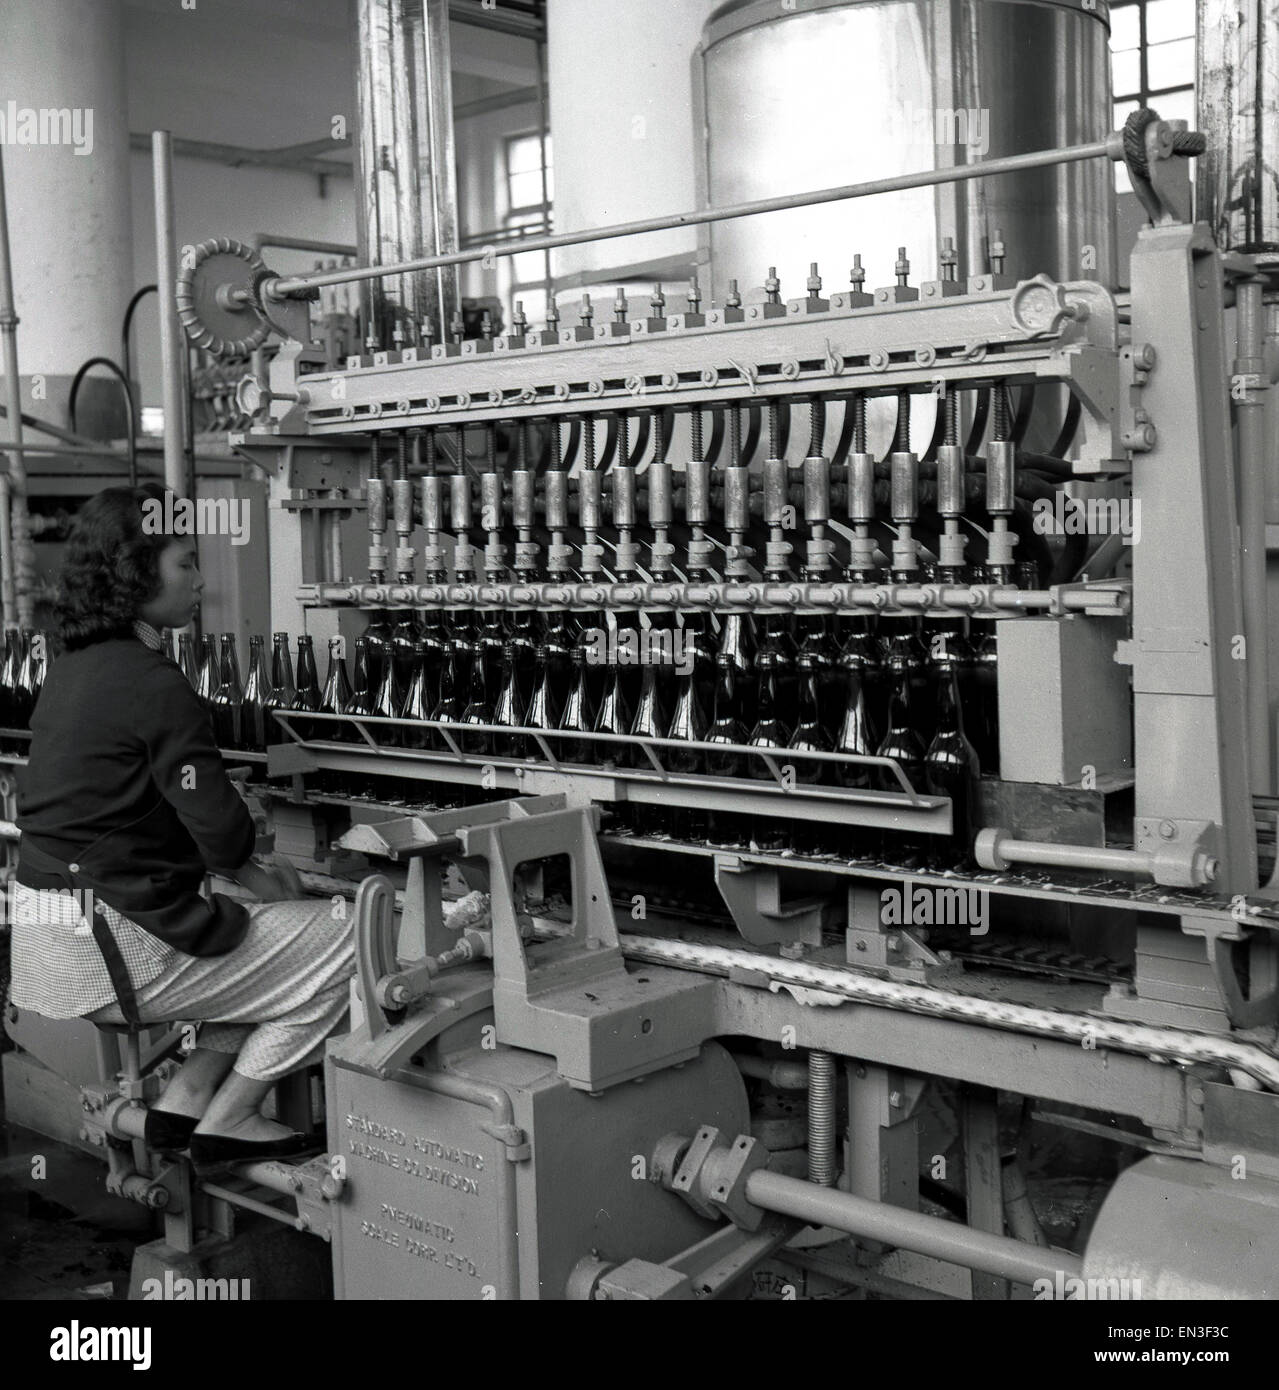 Anni '50, giovane operatrice femminile che lavora in un coperchio di imbottigliamento in metallo o una macchina per tappare bottiglie, Hong Kong. Foto Stock